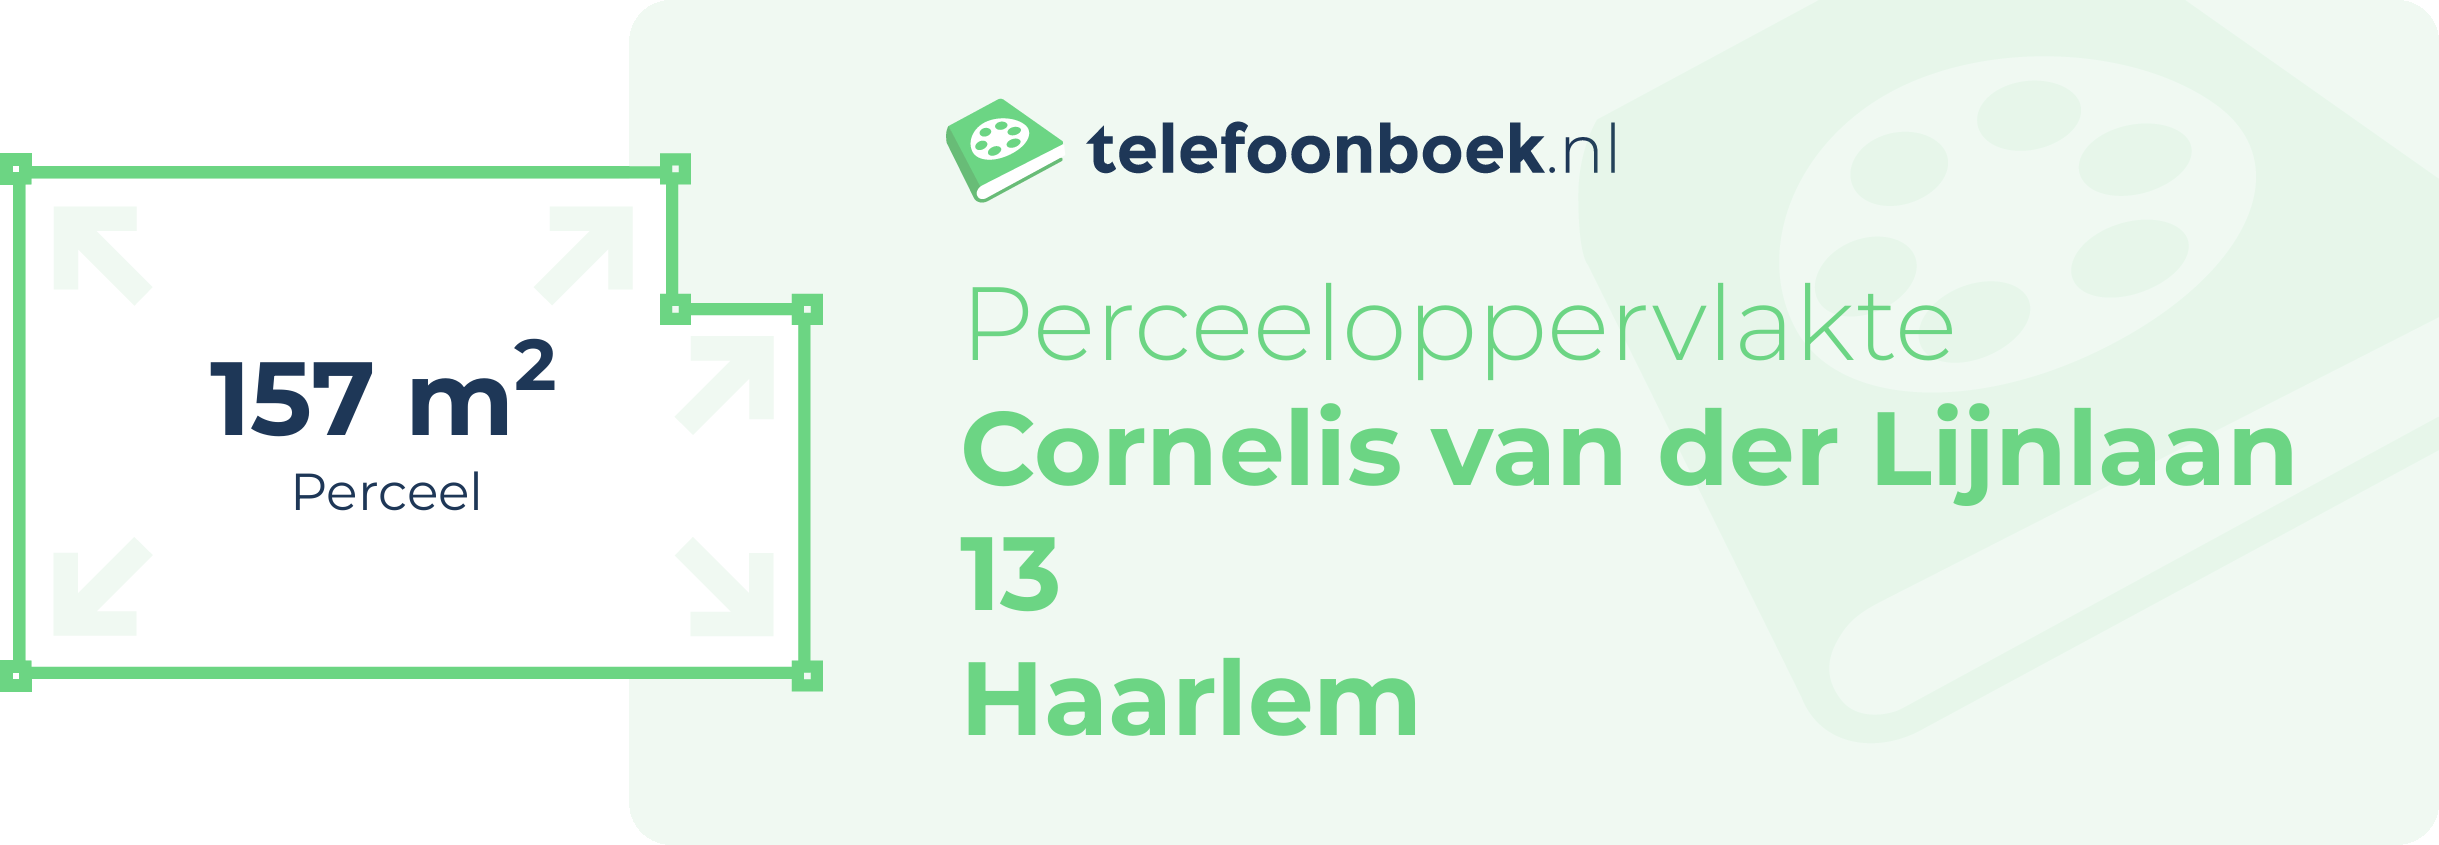 Perceeloppervlakte Cornelis Van Der Lijnlaan 13 Haarlem